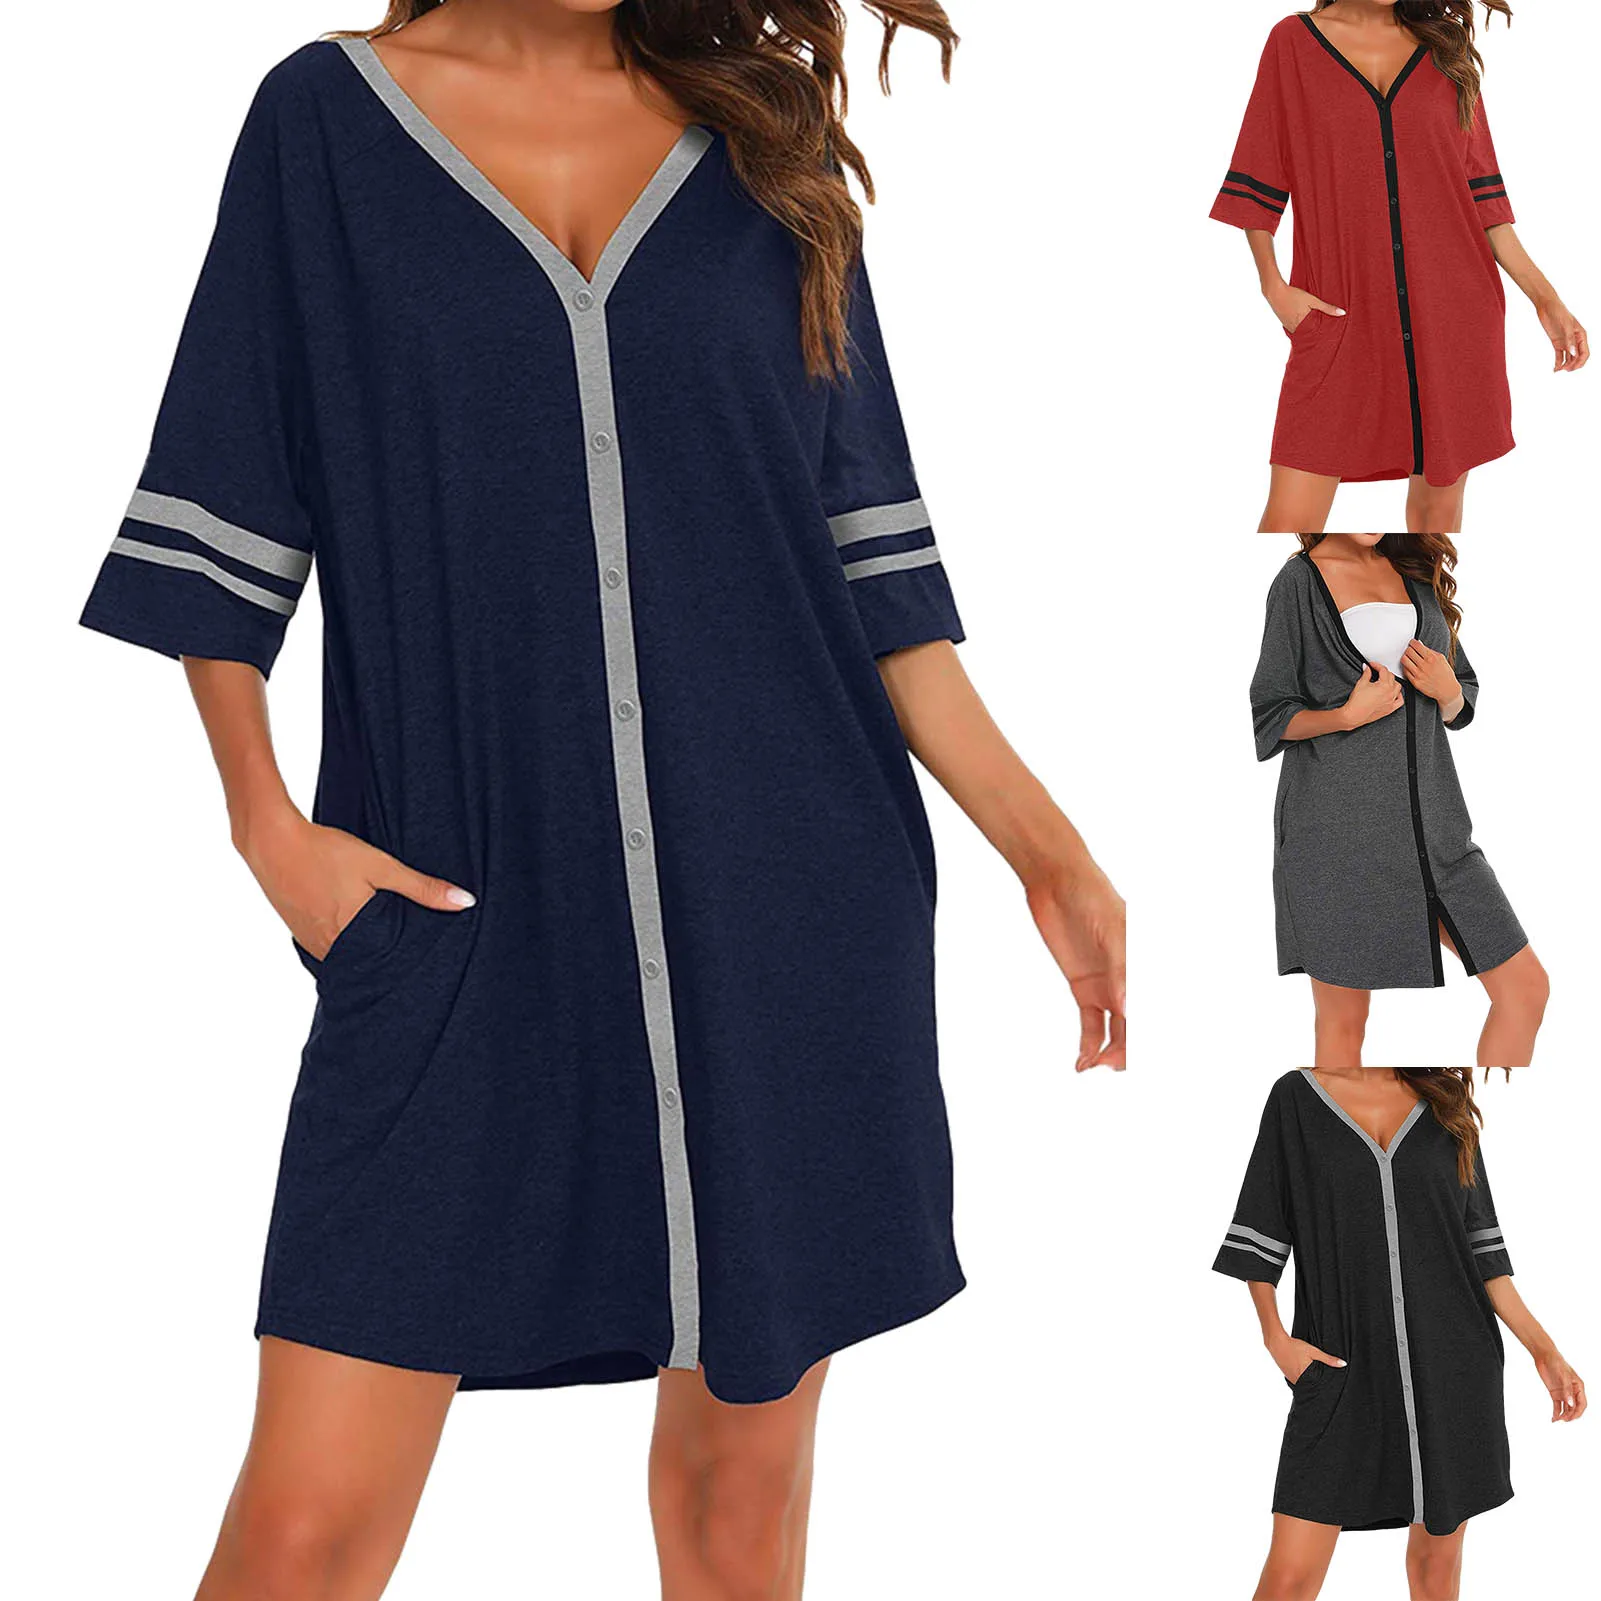 

Пижама женская из искусственного шелка и сатина, с коротким рукавом, домашняя пижама одежды, ночная рубашка, домашняя одежда